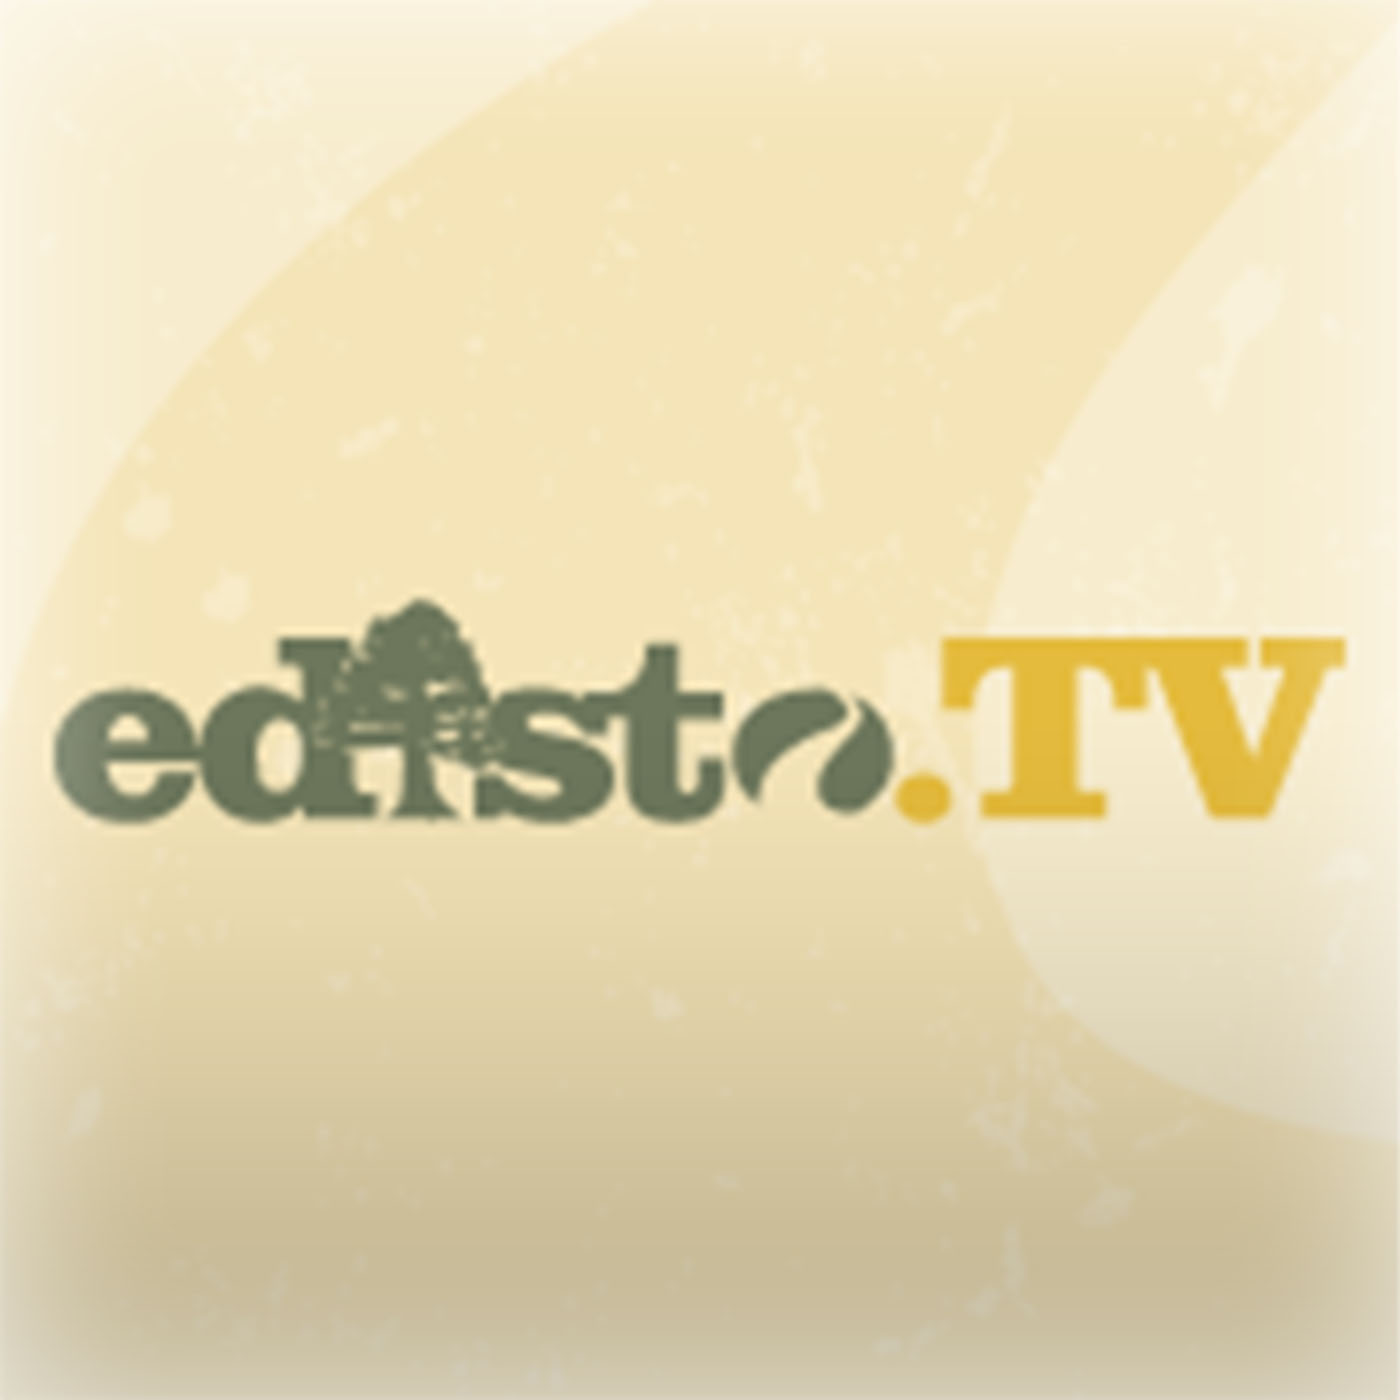 Edisto.TV Podcast - Episode #1